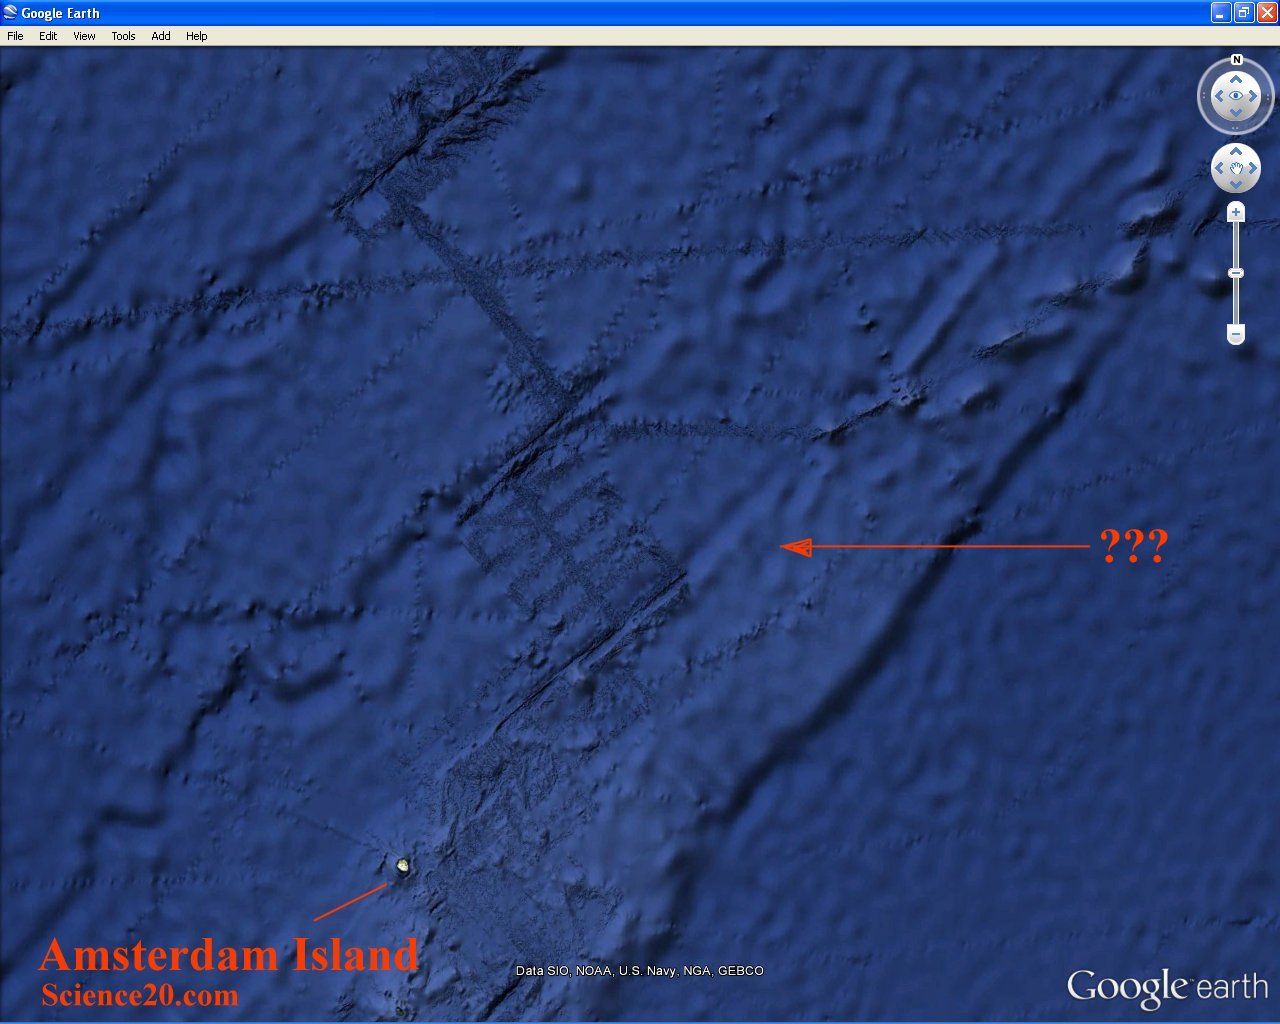 Google Earth Mystery Object? - Hardly!